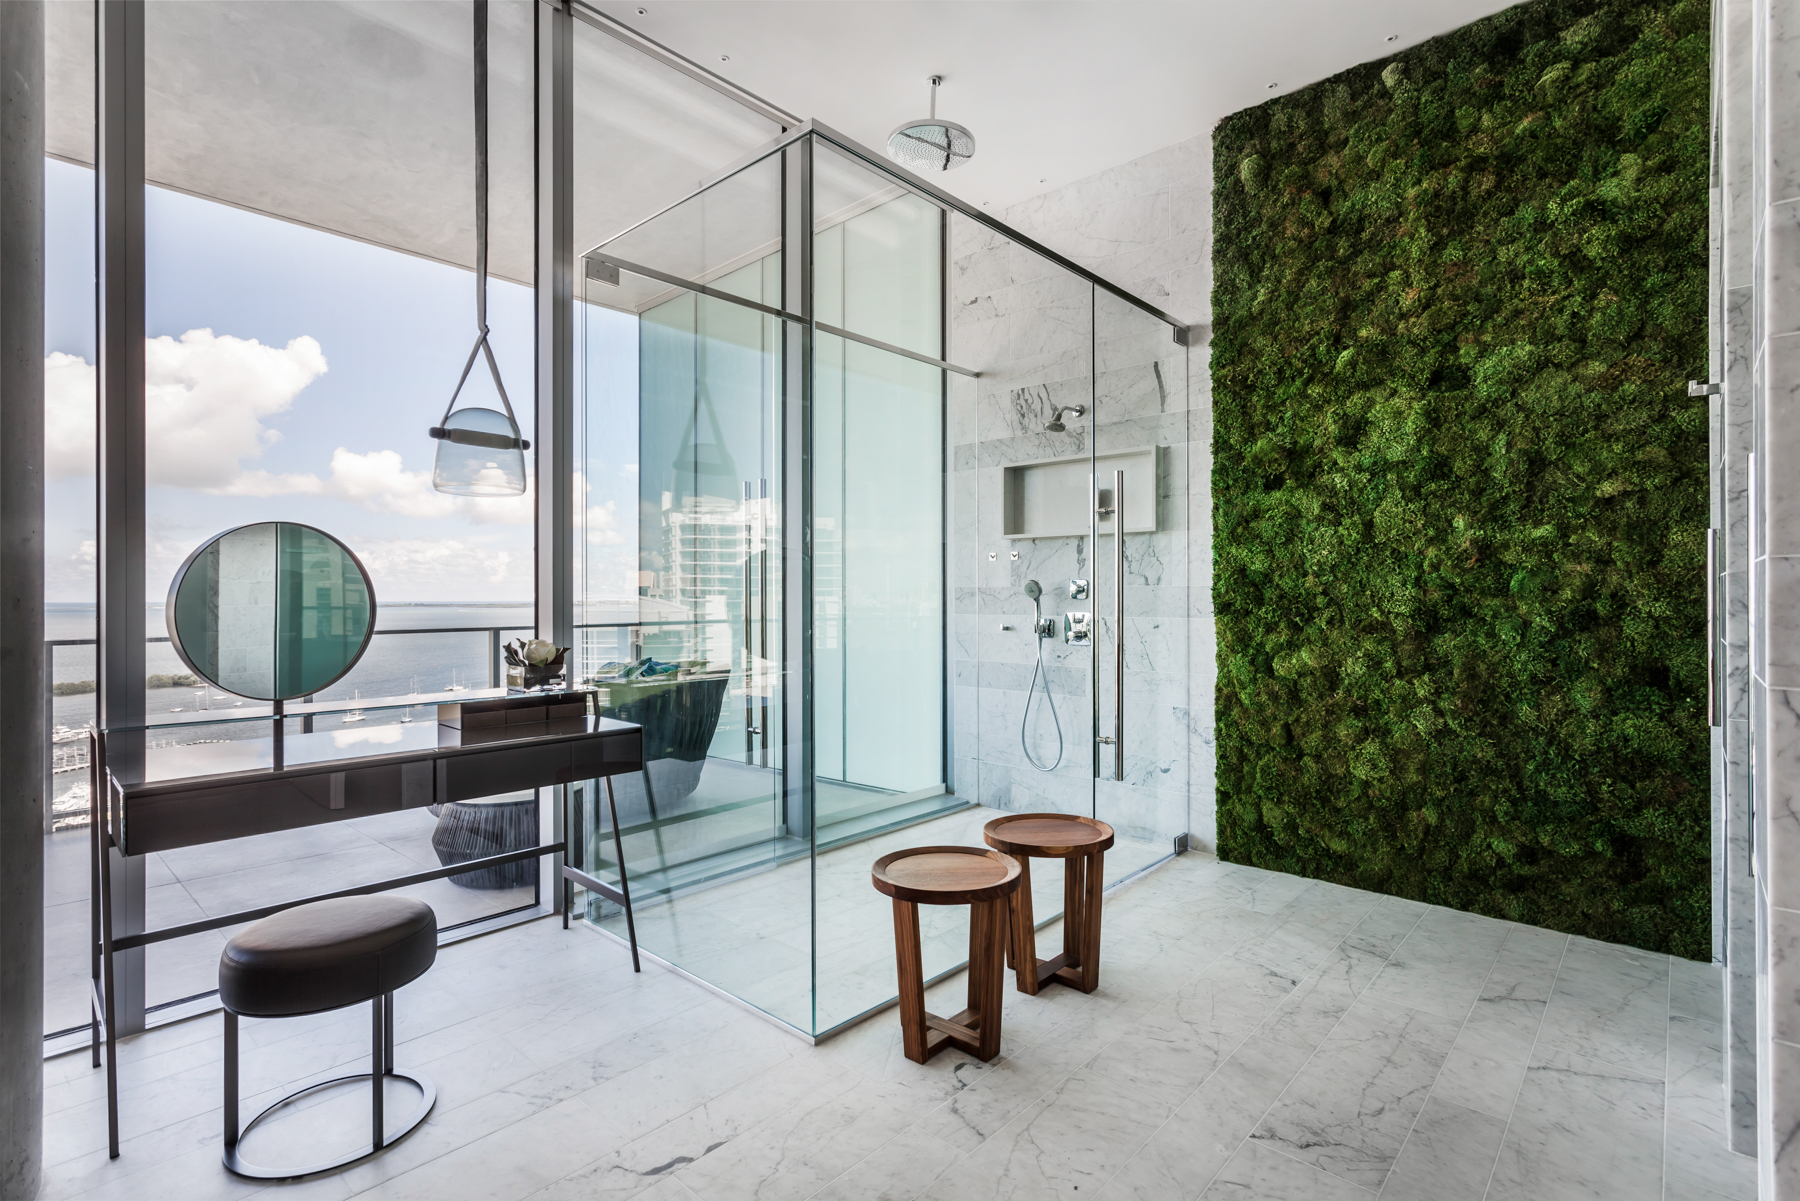 Apê de 500 m² com vista para o mar de Miami tem mix de materiais no décor. Projeto de Andrea Chicharo. Na foto, banheiro com vista para o mar, parede verde e penteadeira.